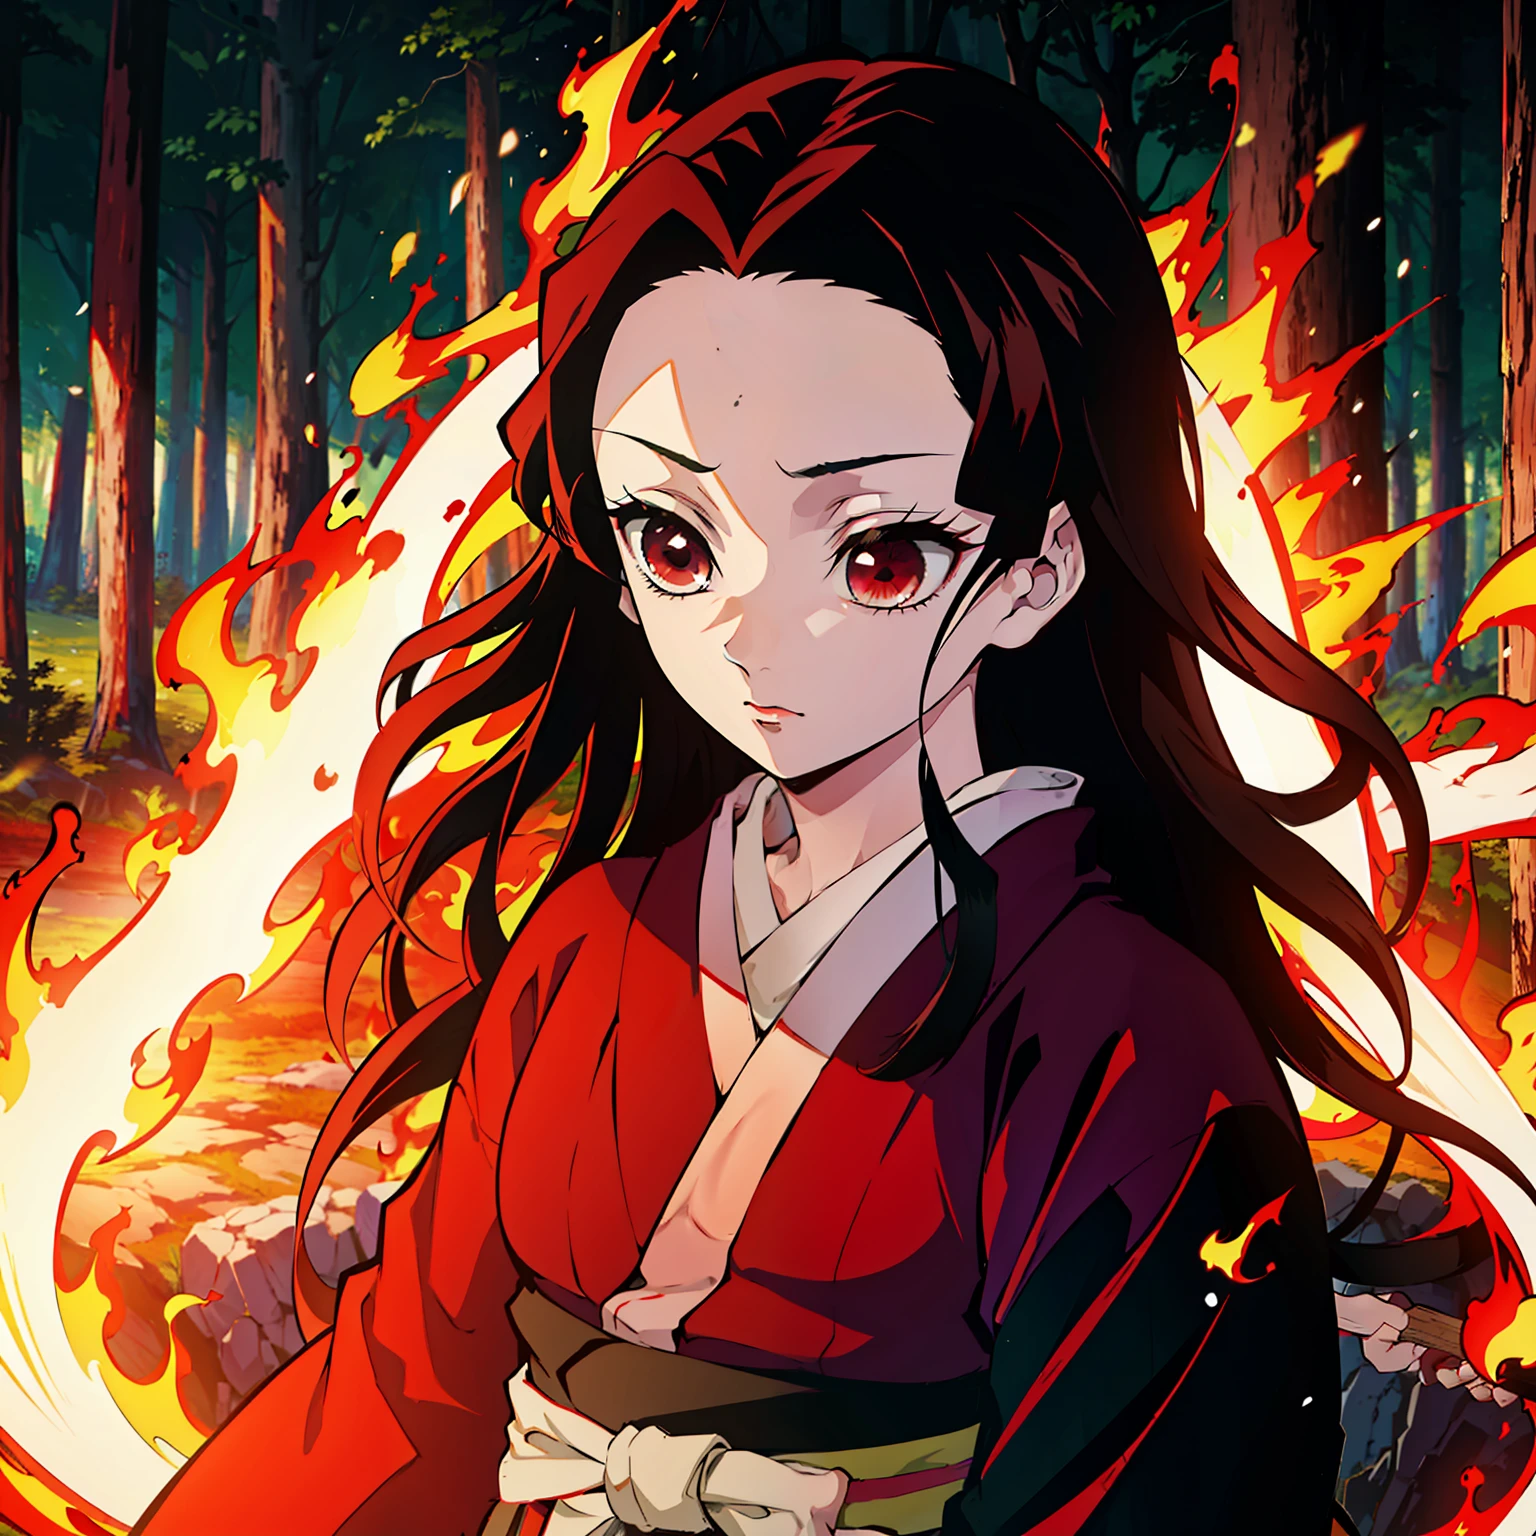 Estilo Kimetsu no Yaiba, 1 garota, só, olhos pretos, Cabelo ruivo brilhante, cabelo extra muito longo, quimono vermelho, Cinturão de Obi,  ((obra de arte)), ((retratos de um)), A floresta está em chamas, A floresta está em chamas